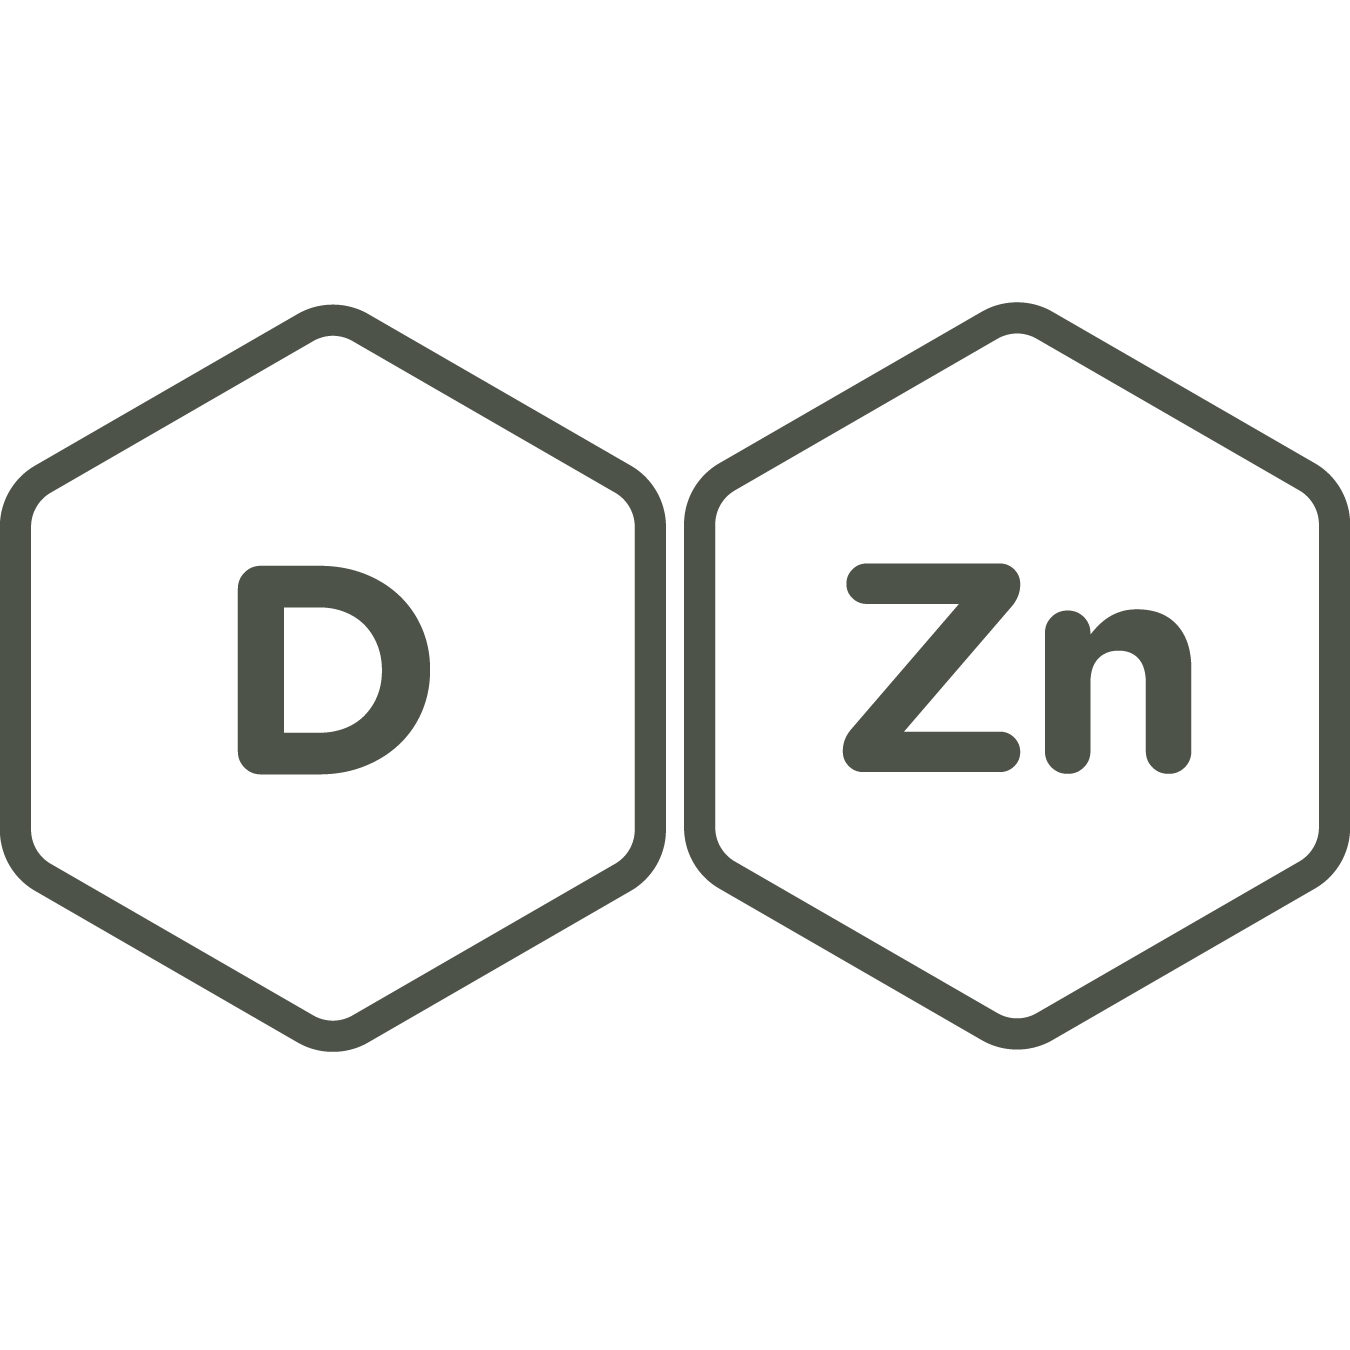 Vitamin D and Zinc